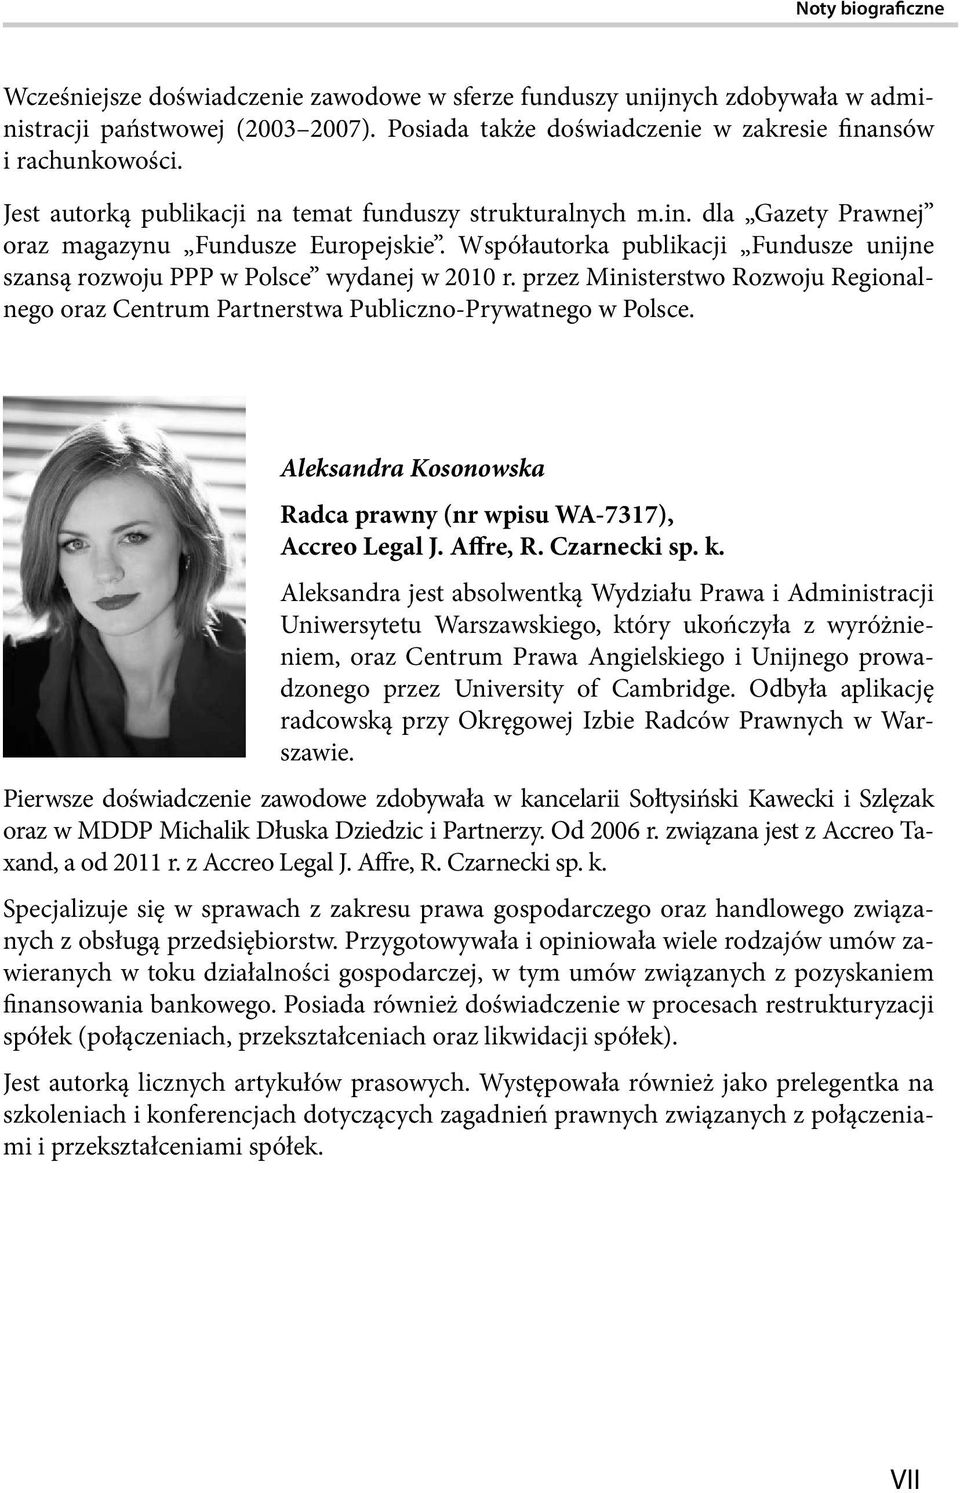 Współautorka publikacji Fundusze unijne szansą rozwoju PPP w Polsce wydanej w 2010 r. przez Ministerstwo Rozwoju Regionalnego oraz Centrum Partnerstwa Publiczno-Prywatnego w Polsce.